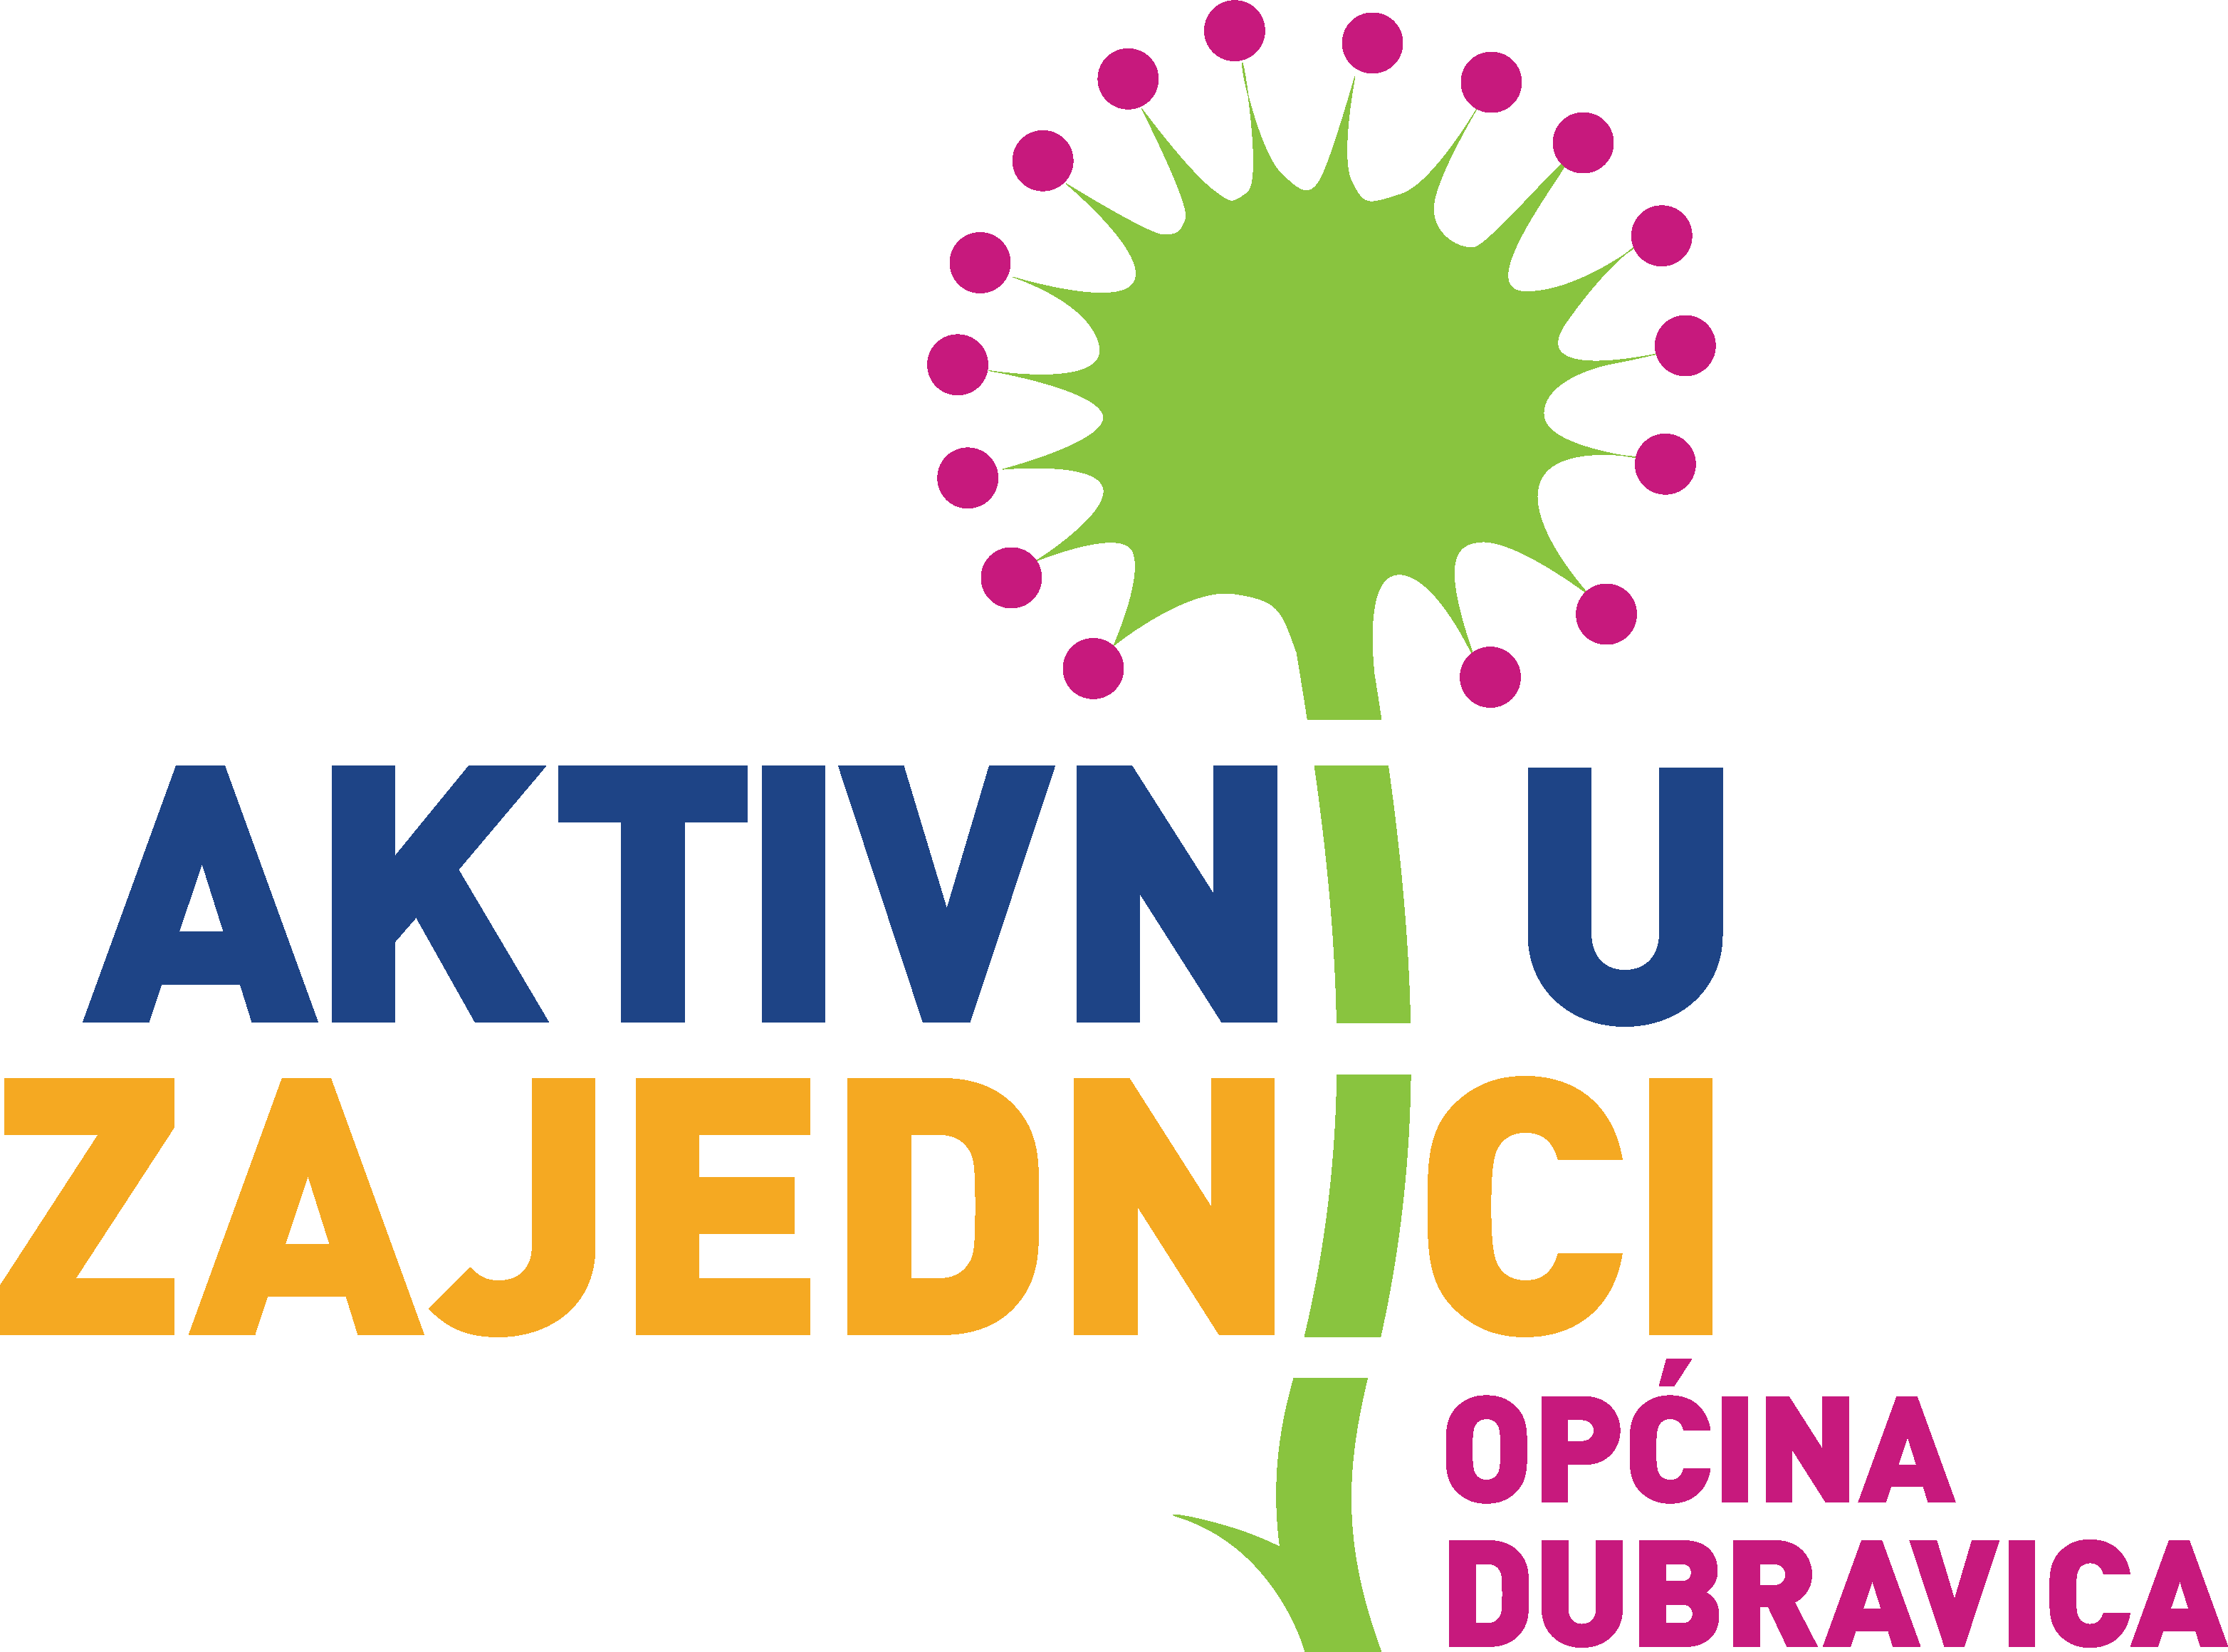 AKTIVNI U ZAJEDNICI DUBRAVICA logo PNG